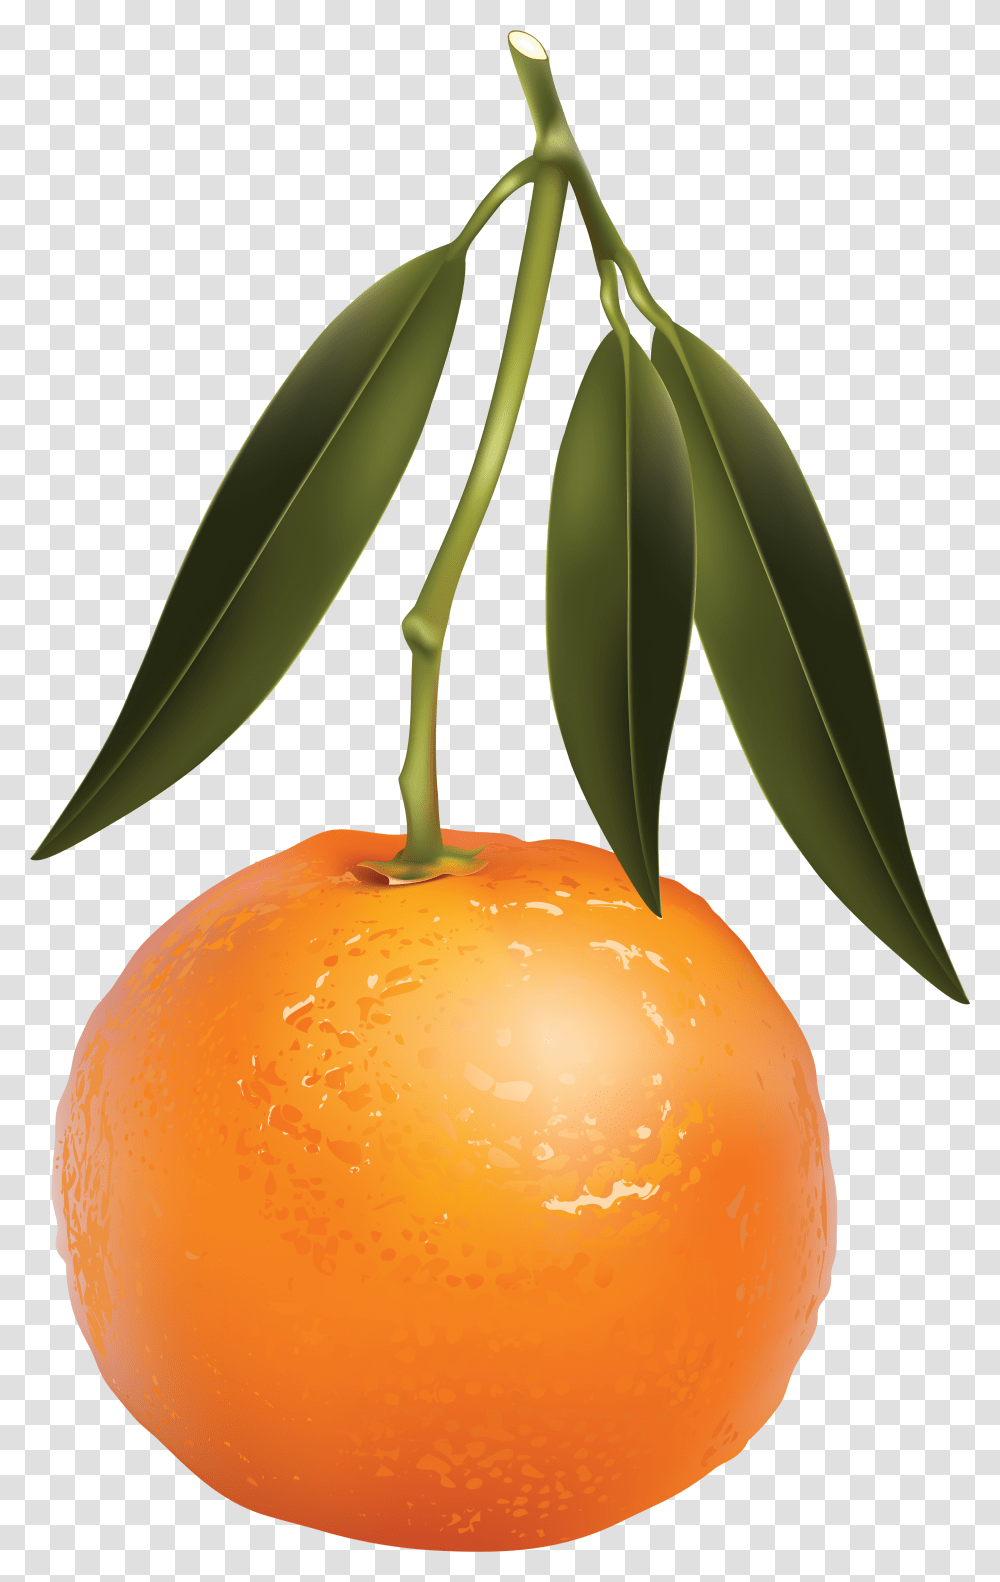 Mandarin Images Free Download Mandarin Orange, Plant, Citrus Fruit, Food, Leaf Transparent Png